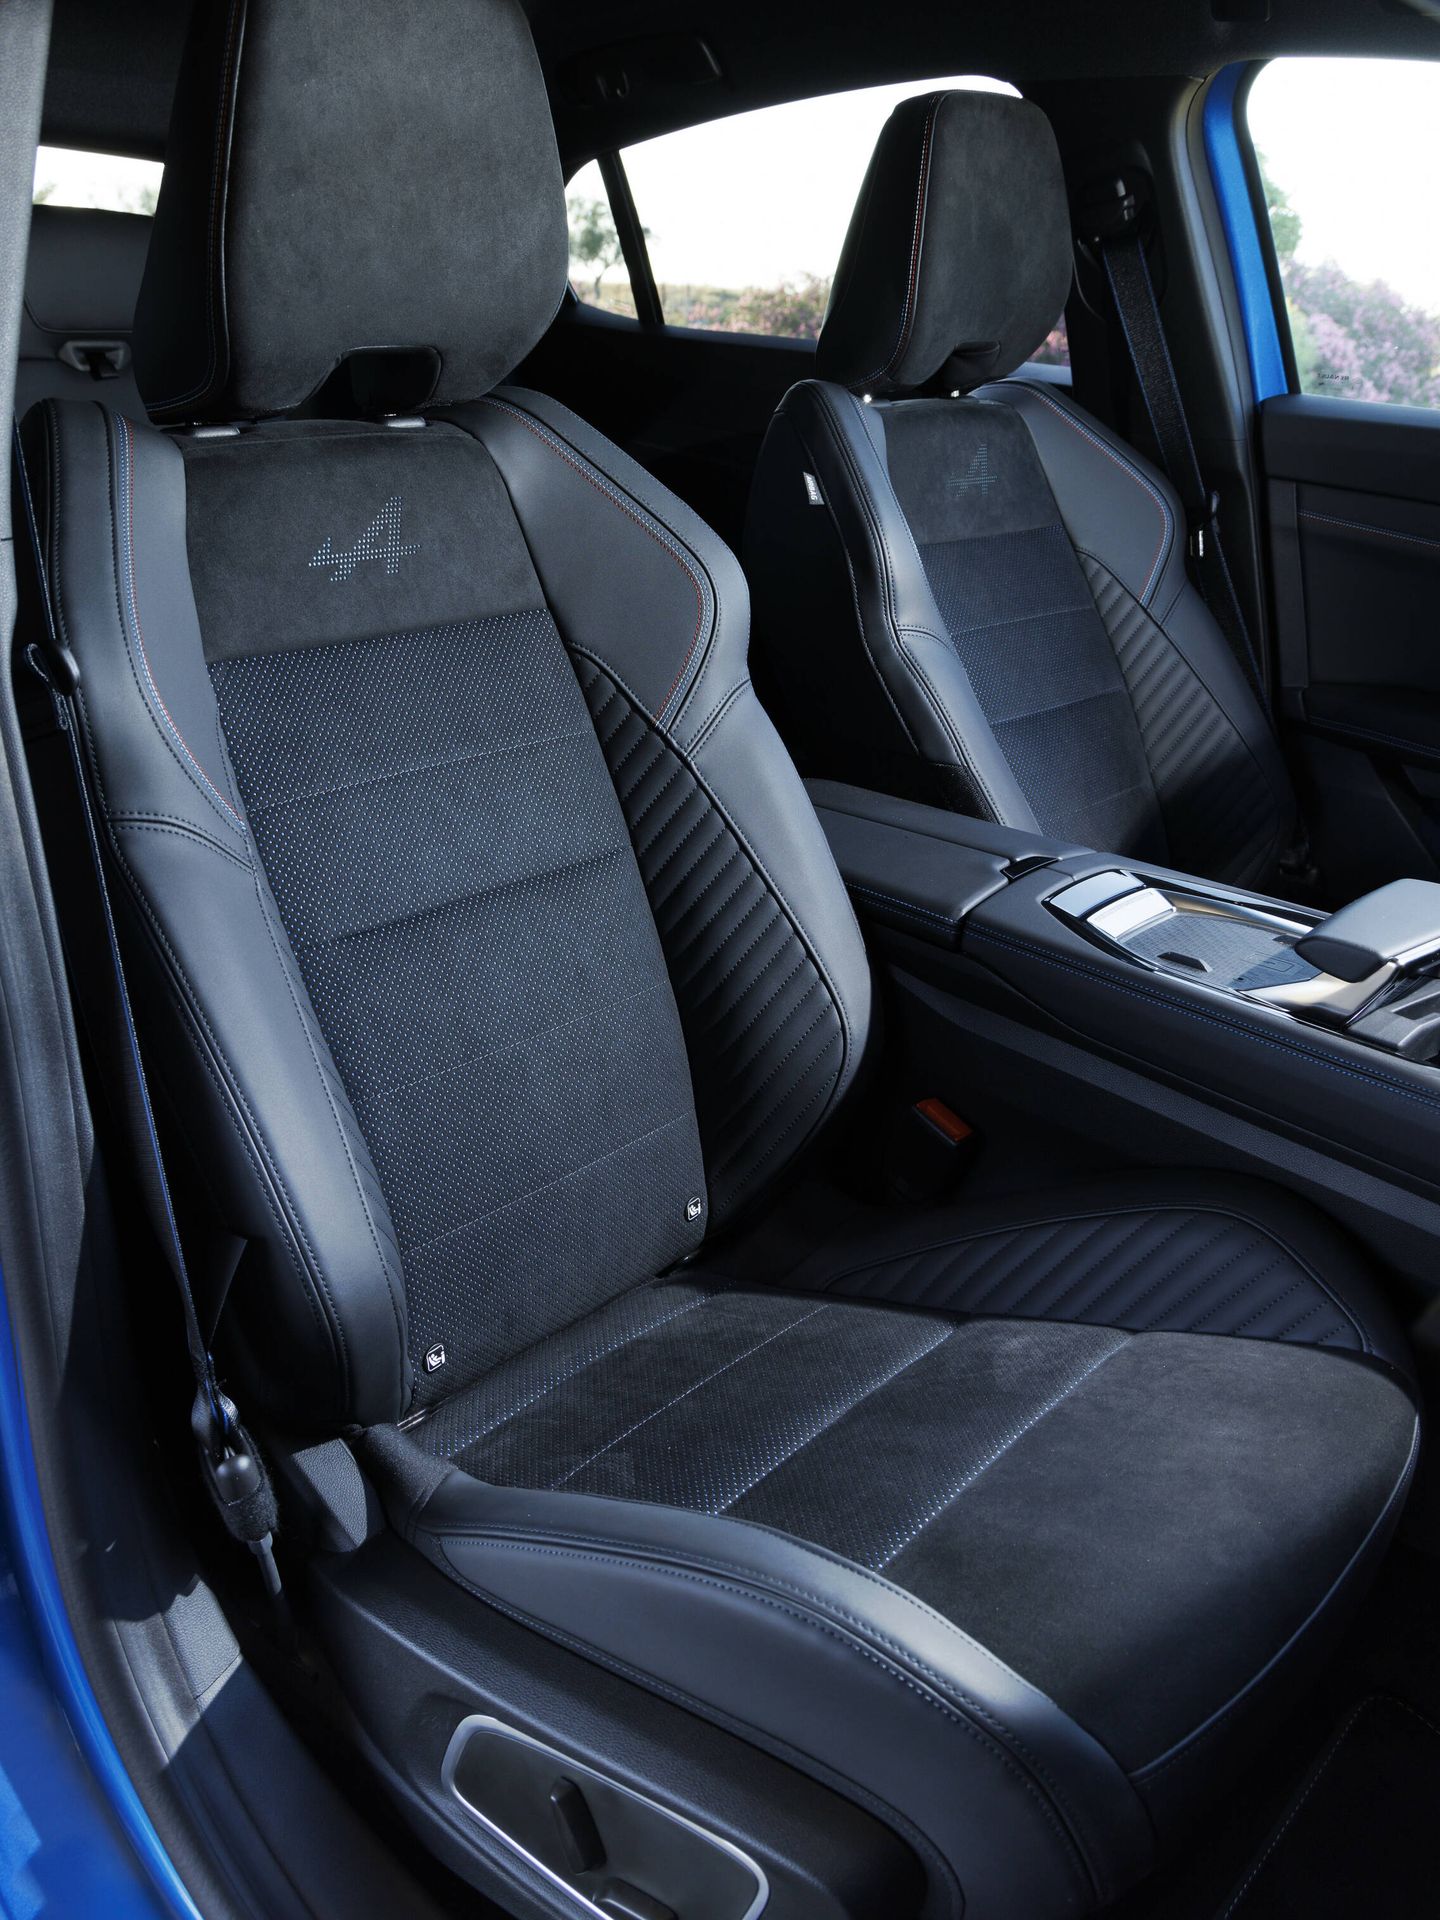 Los asientos tienen un diseño específico, y sujetan más, conservando el confort.